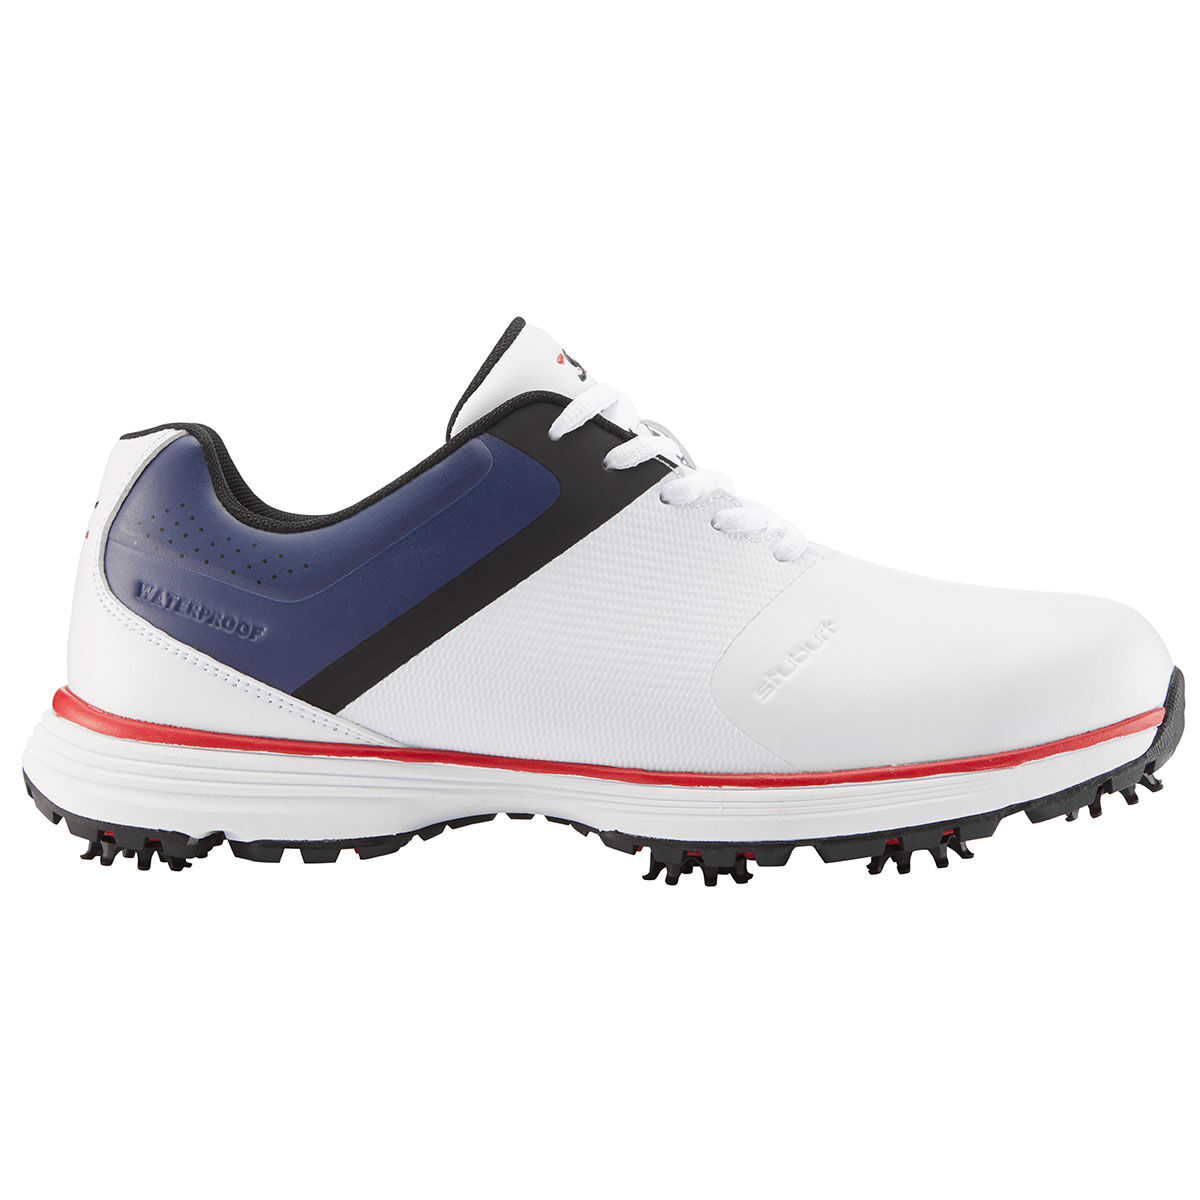 stuburt evolve golf shoes